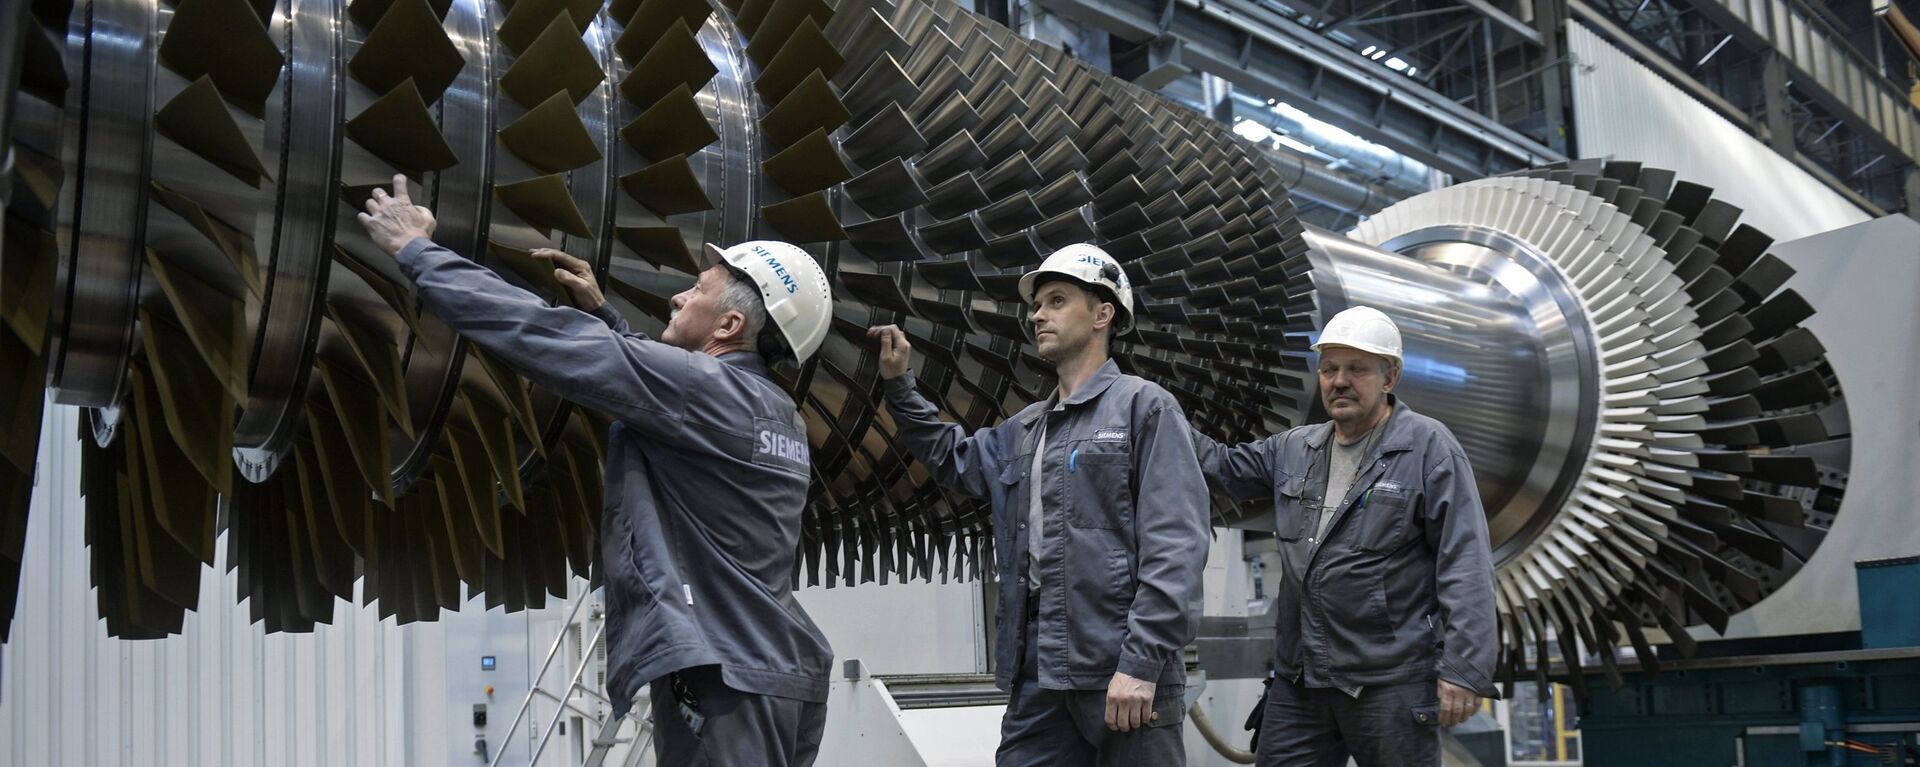 Radnici pregledaju rotor sa lopaticama u pogonu fabrike Simens u Sankt Peterburgu - Sputnik Srbija, 1920, 14.08.2019